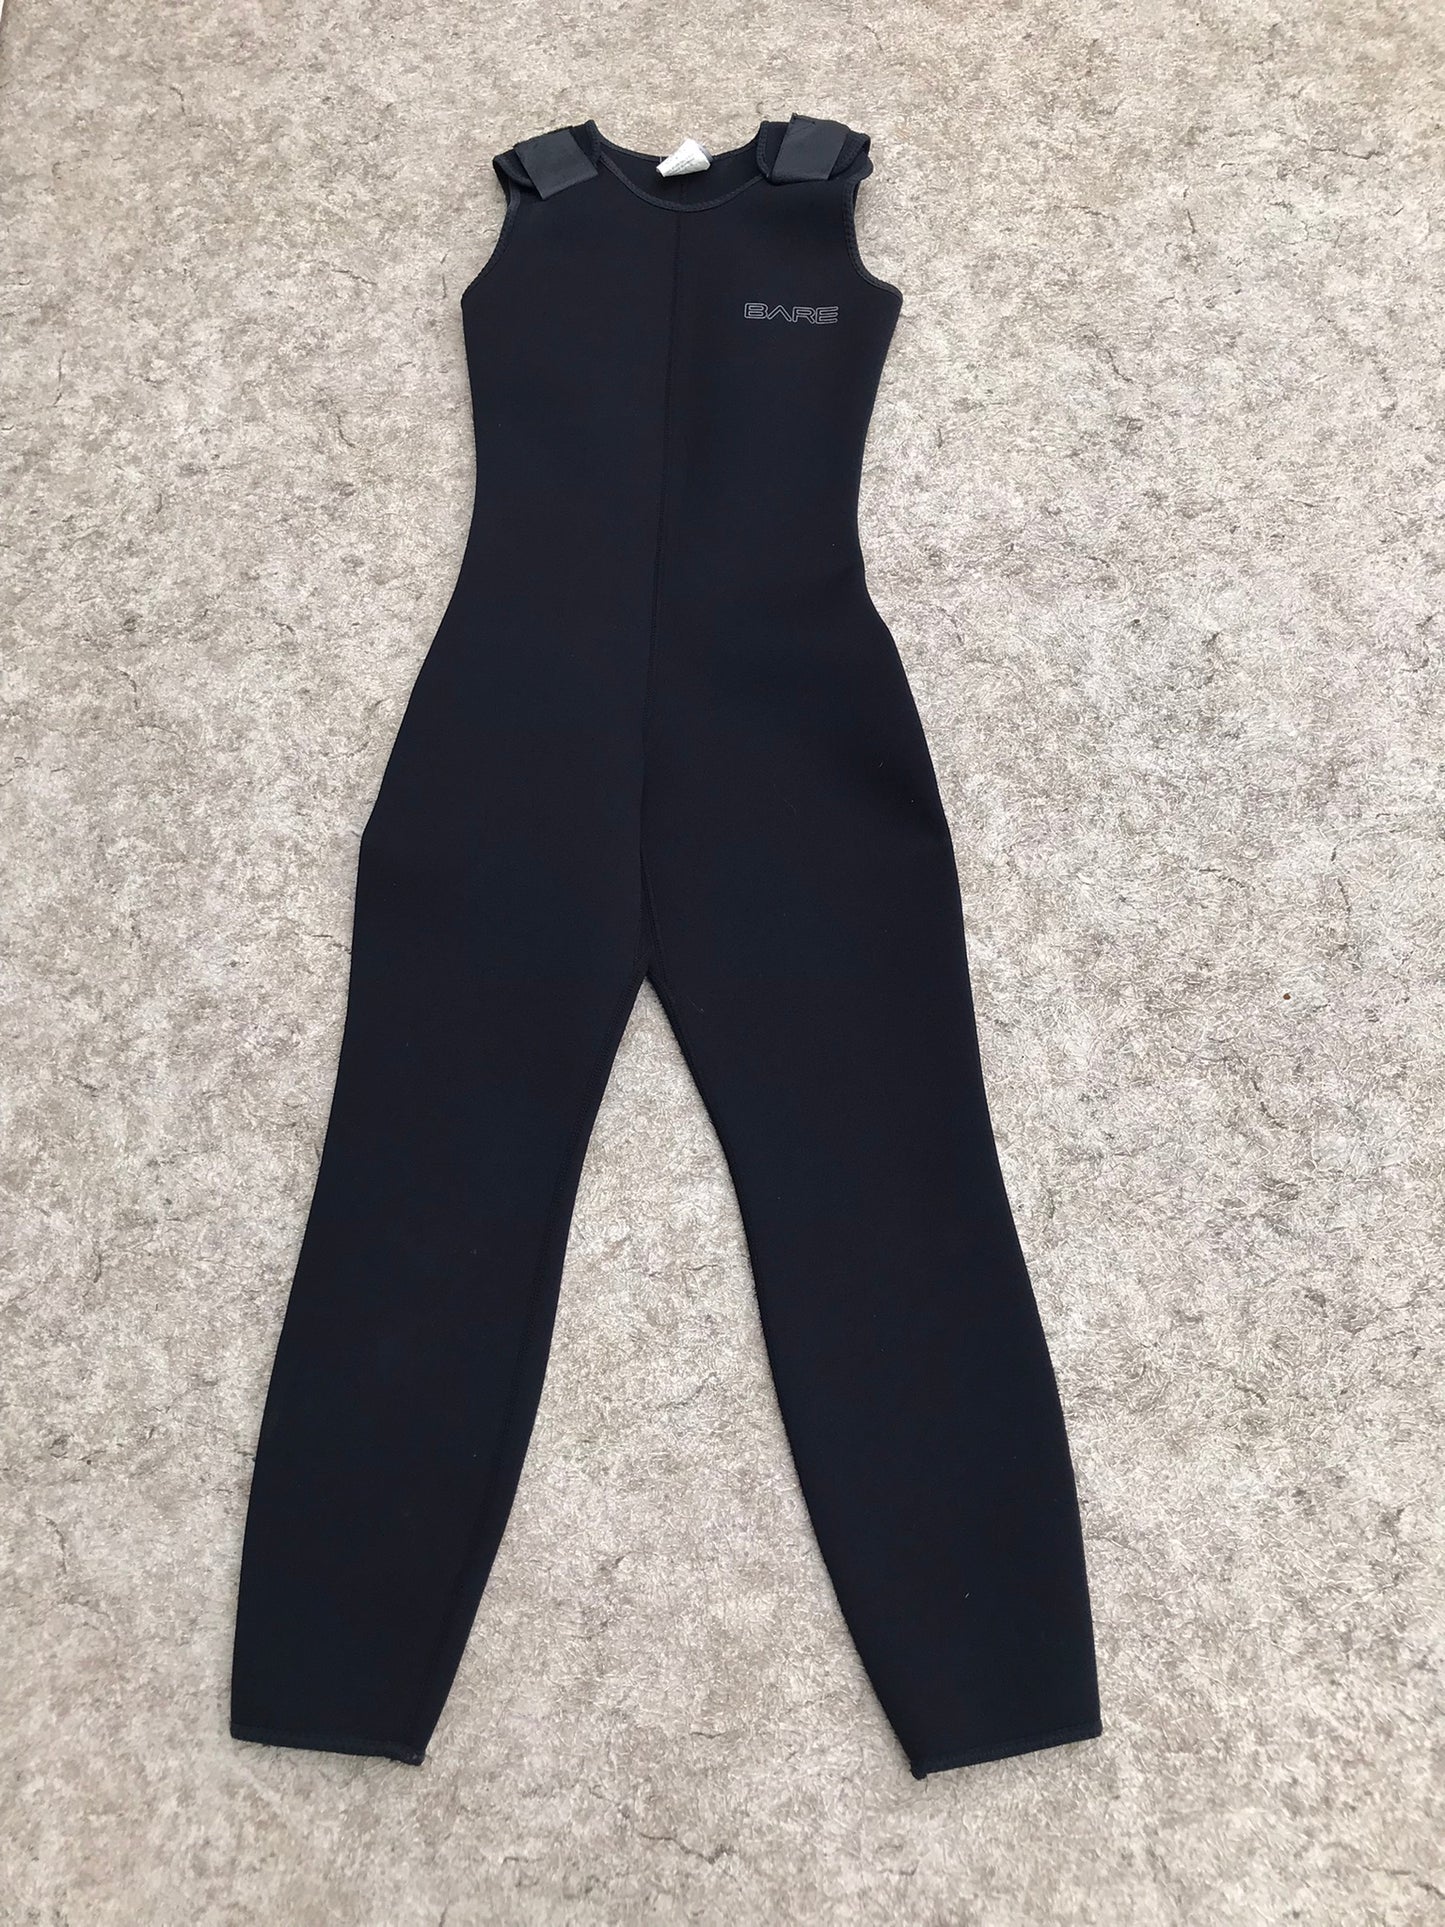 Wetsuit Child Size 14 Bare John Full 2-3 mm Black Neoprene